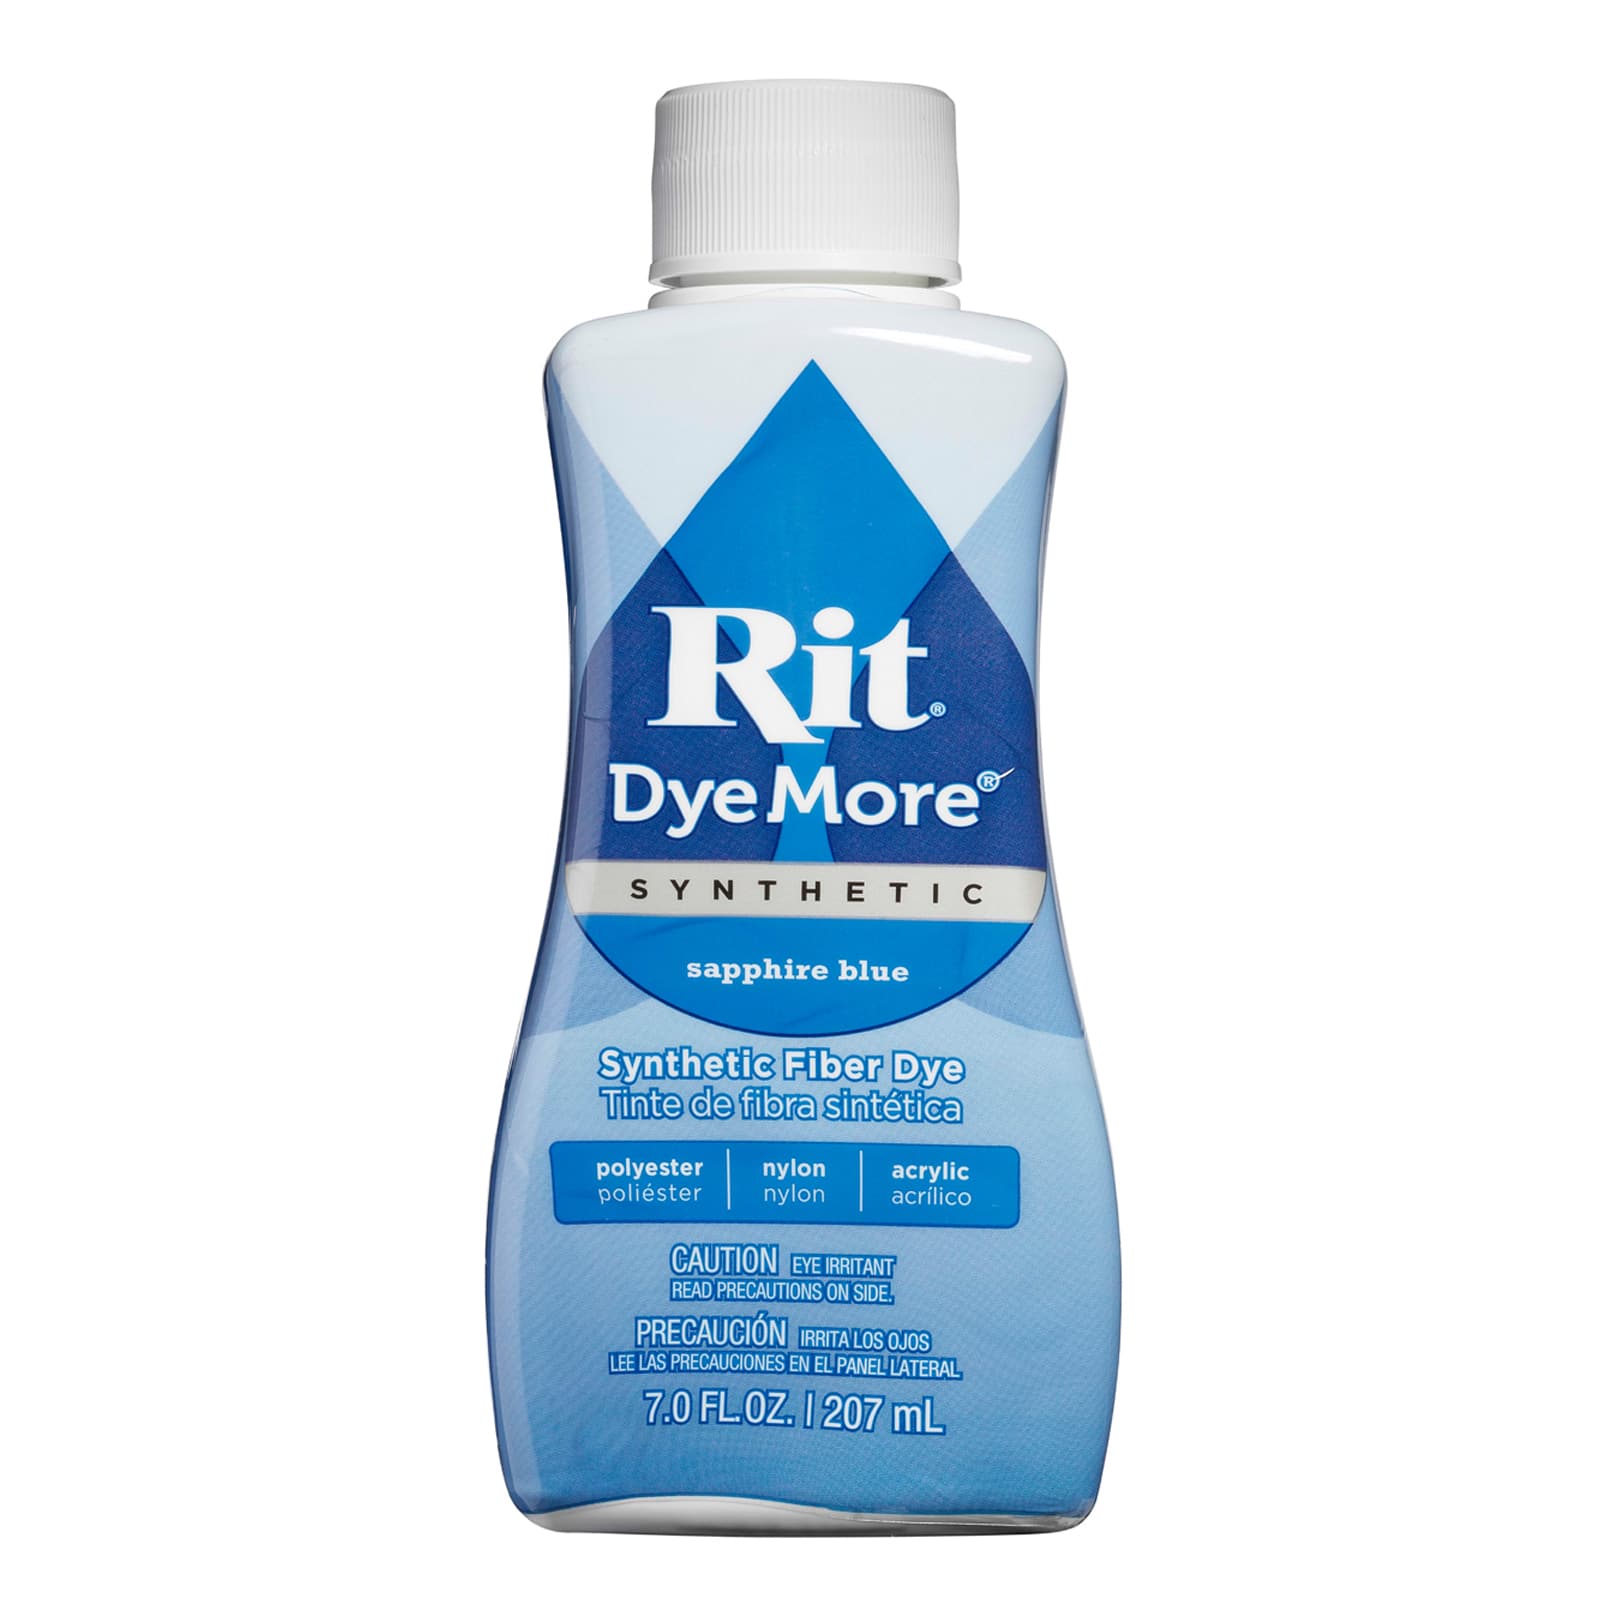 Rit DyeMore Synthetic Fiber Dye - Tropic Teal, 7 oz 